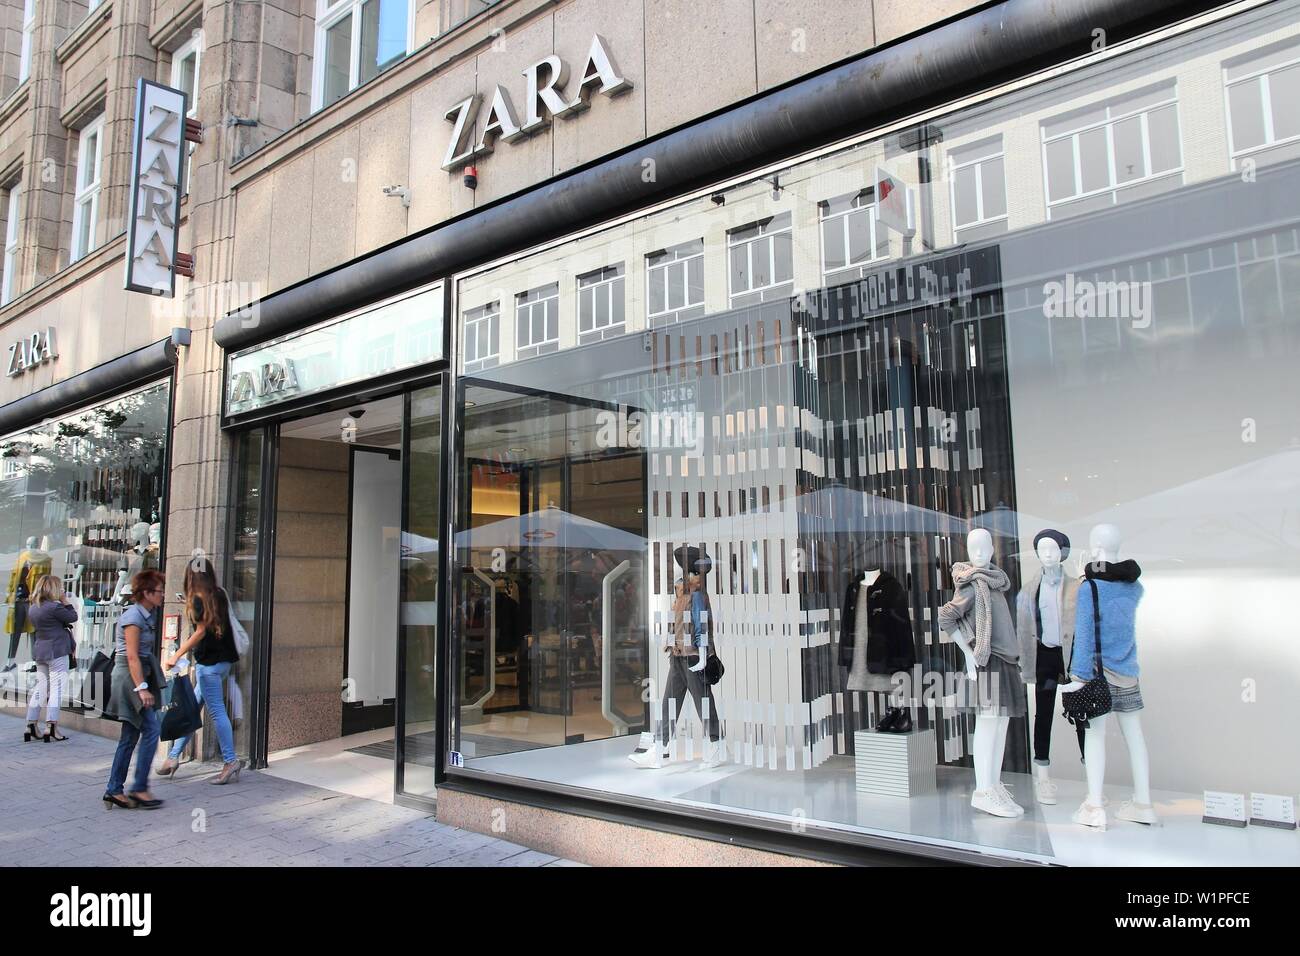 Zara Shop Banque d'image et photos - Page 6 - Alamy